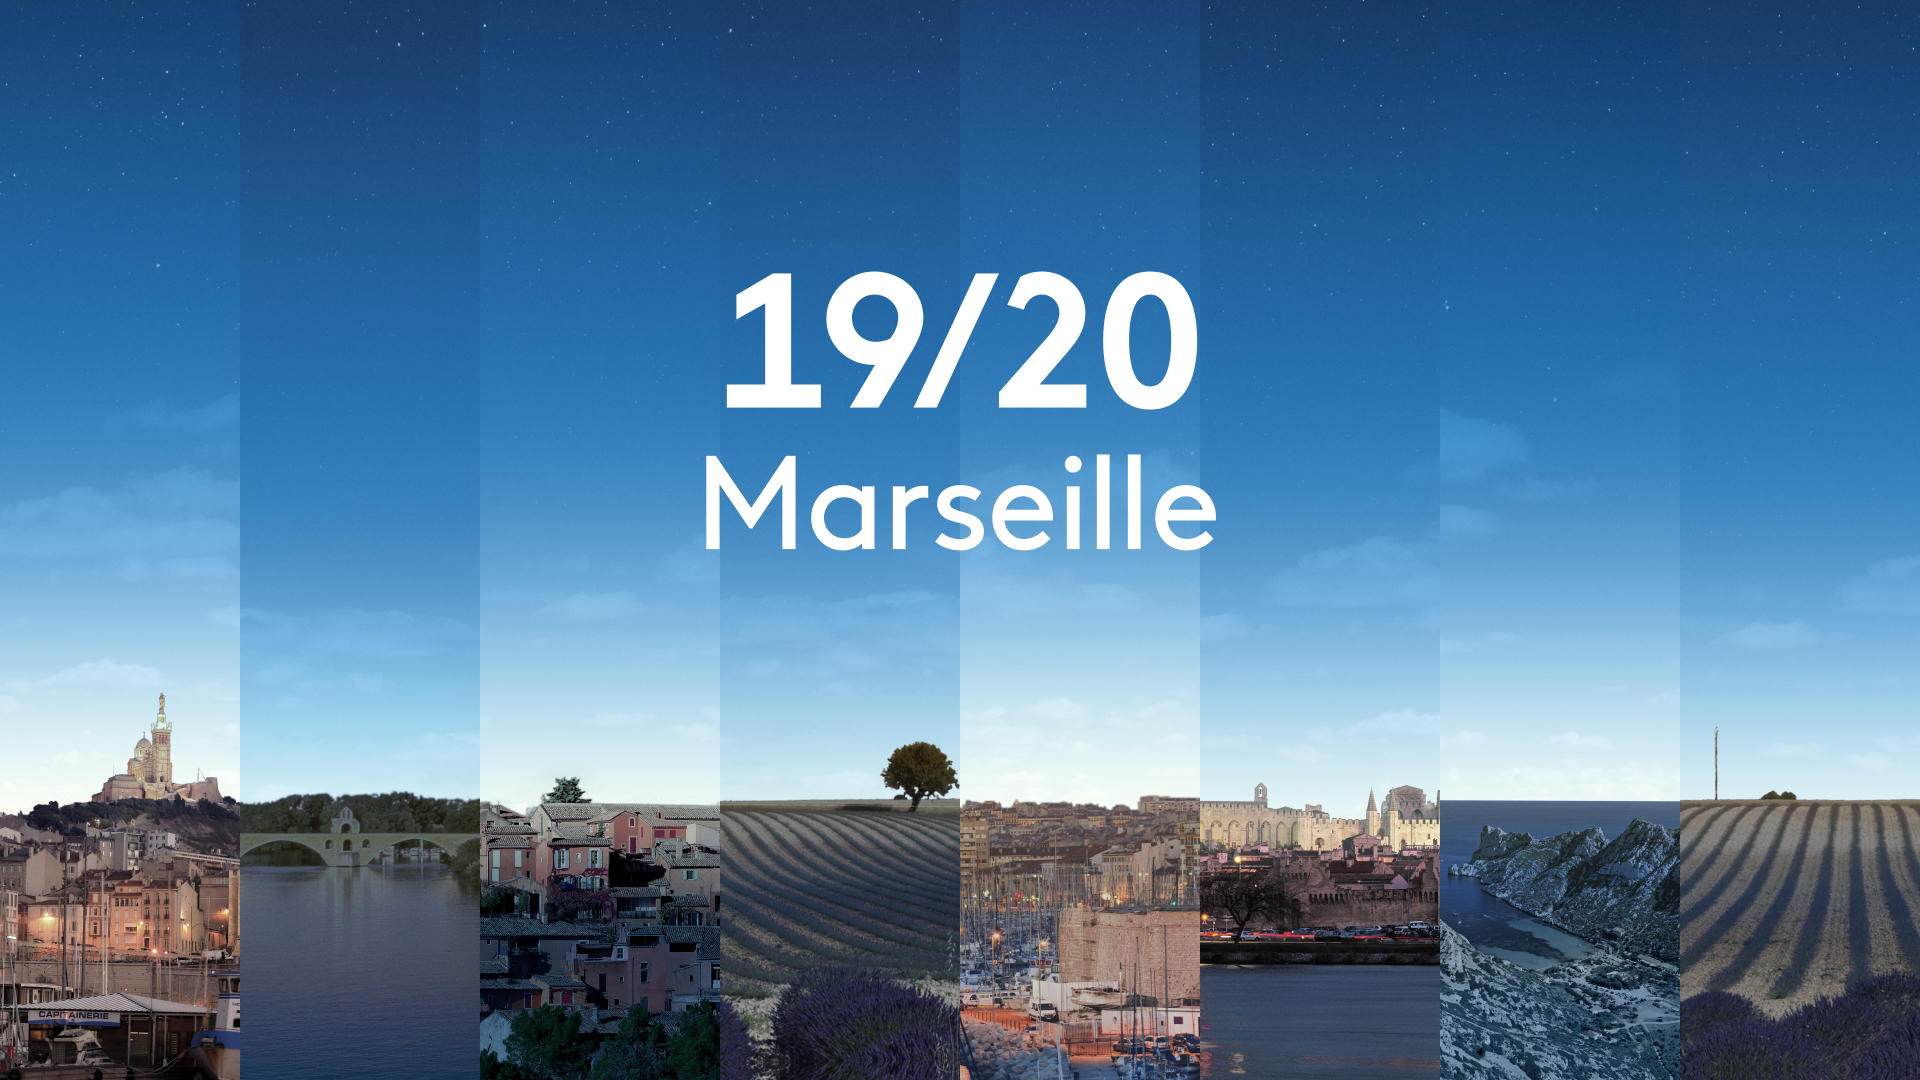 Edition de proximité - La page Marseille